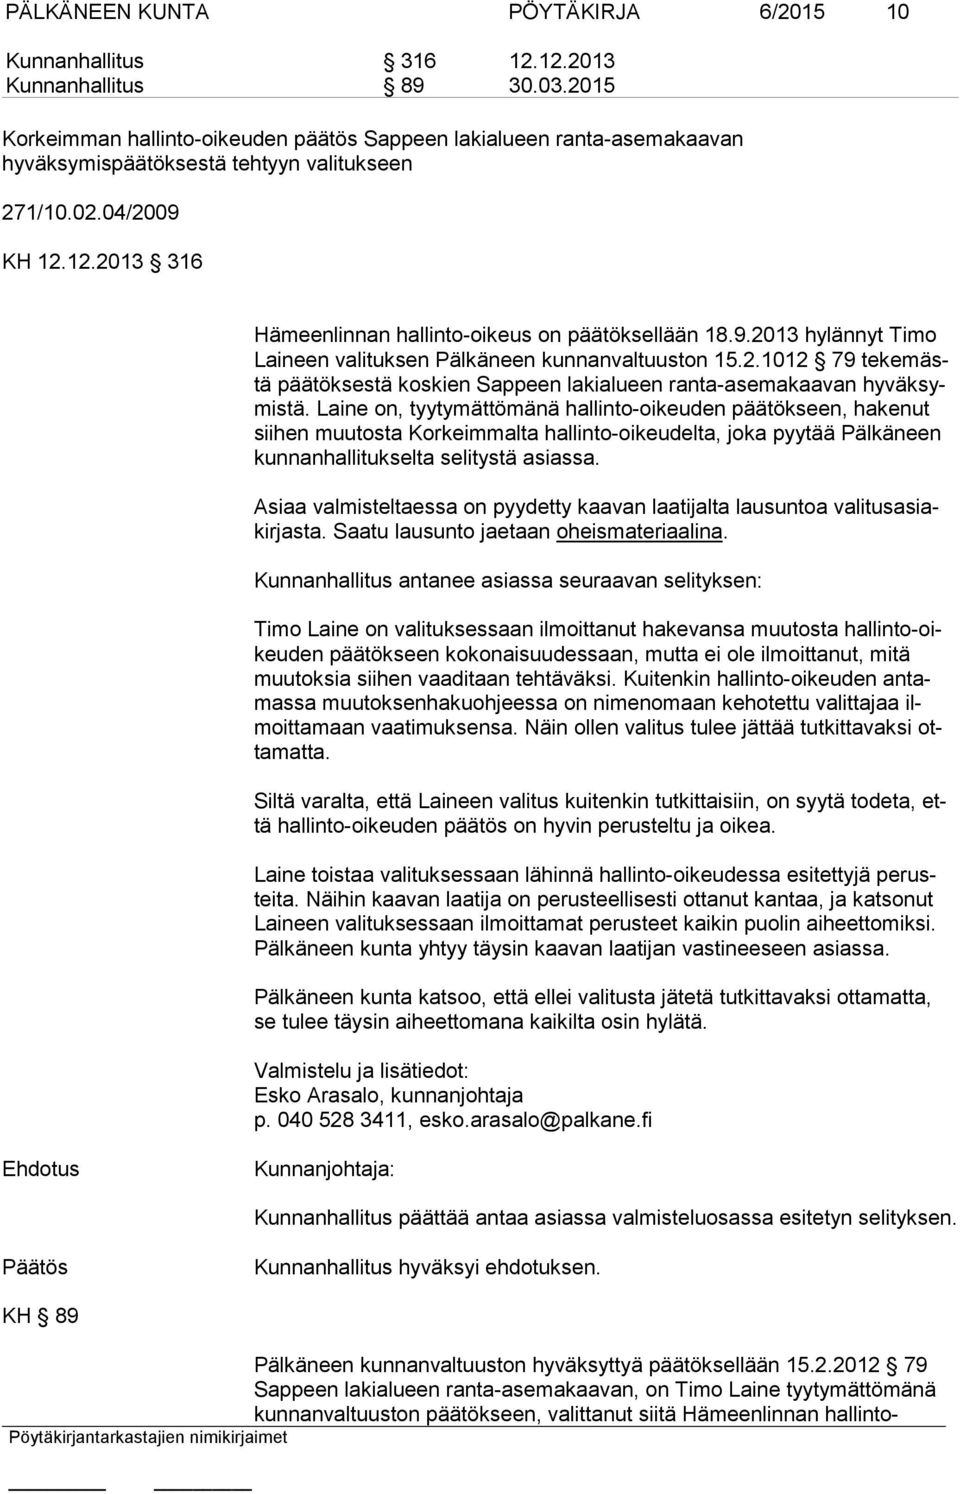 12.2013 316 Hämeenlinnan hallinto-oikeus on päätöksellään 18.9.2013 hylännyt Timo Lai neen valituksen Pälkäneen kunnanvaltuuston 15.2.1012 79 te ke mästä päätöksestä koskien Sappeen lakialueen ranta-asemakaavan hy väk symis tä.